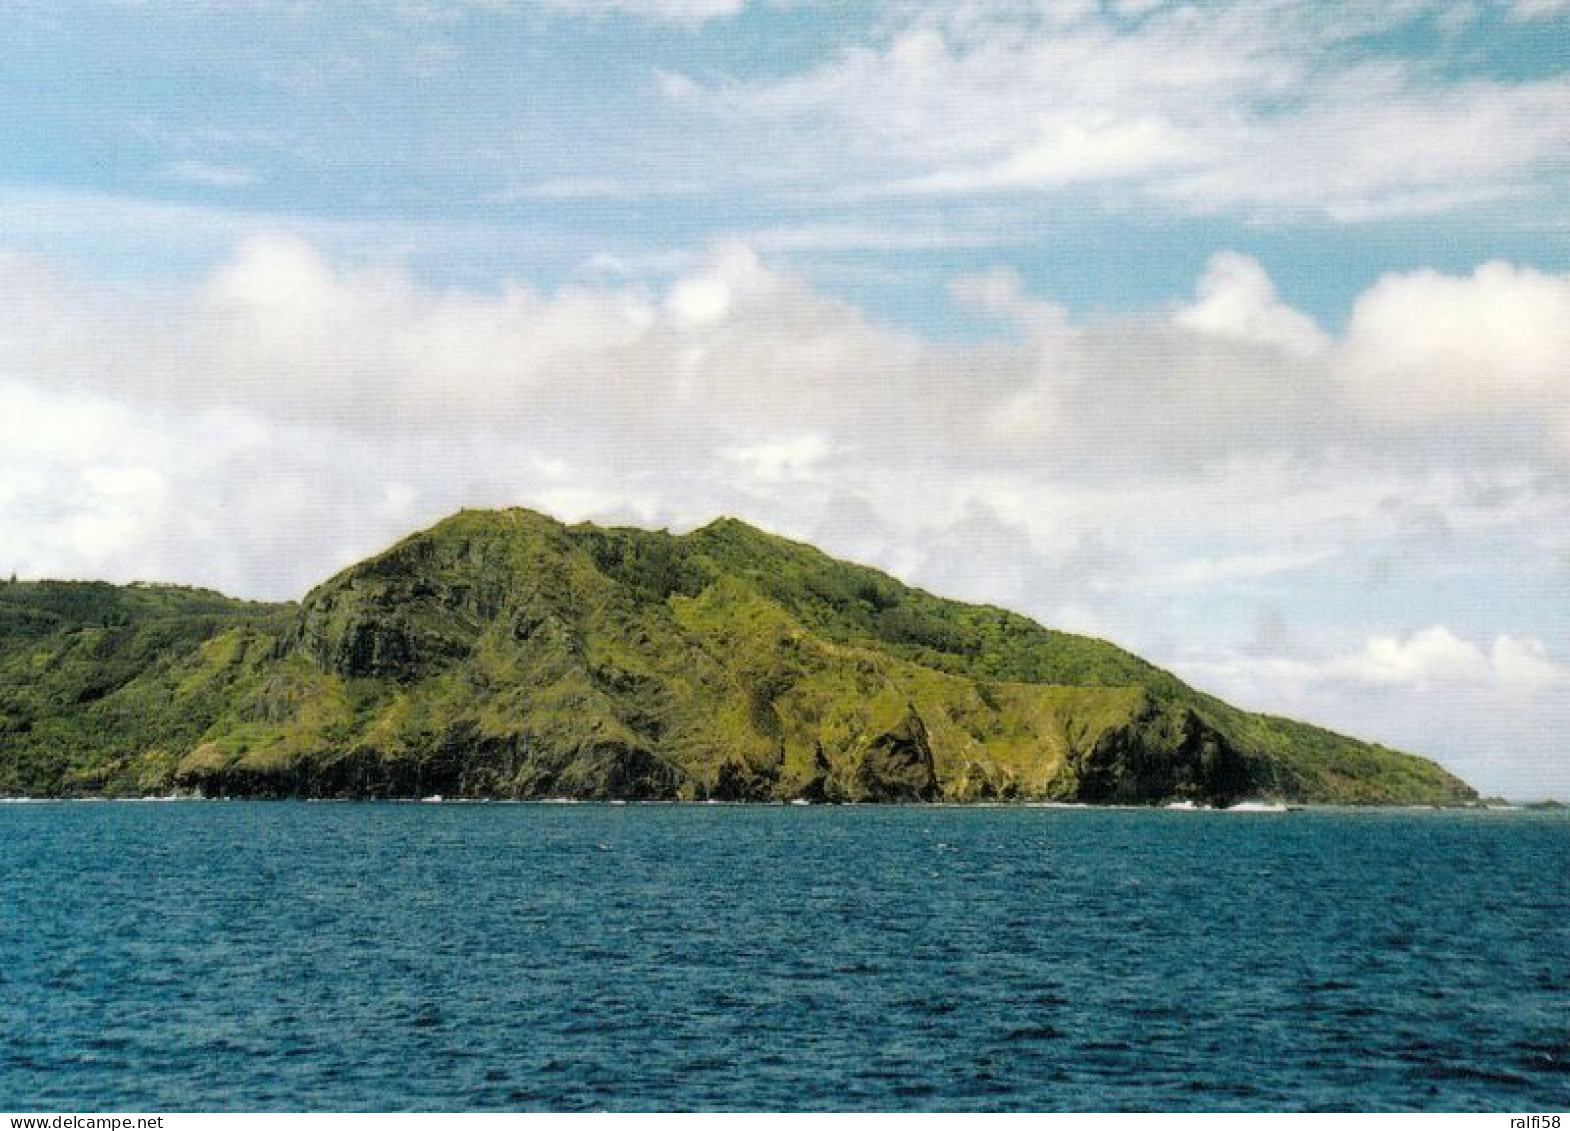 8 AK Pitcairn Island * Ansichten der Insel Pitcairn - dabei auch die Bounty Bay, letzte britische Kronkolonie im Pazifik